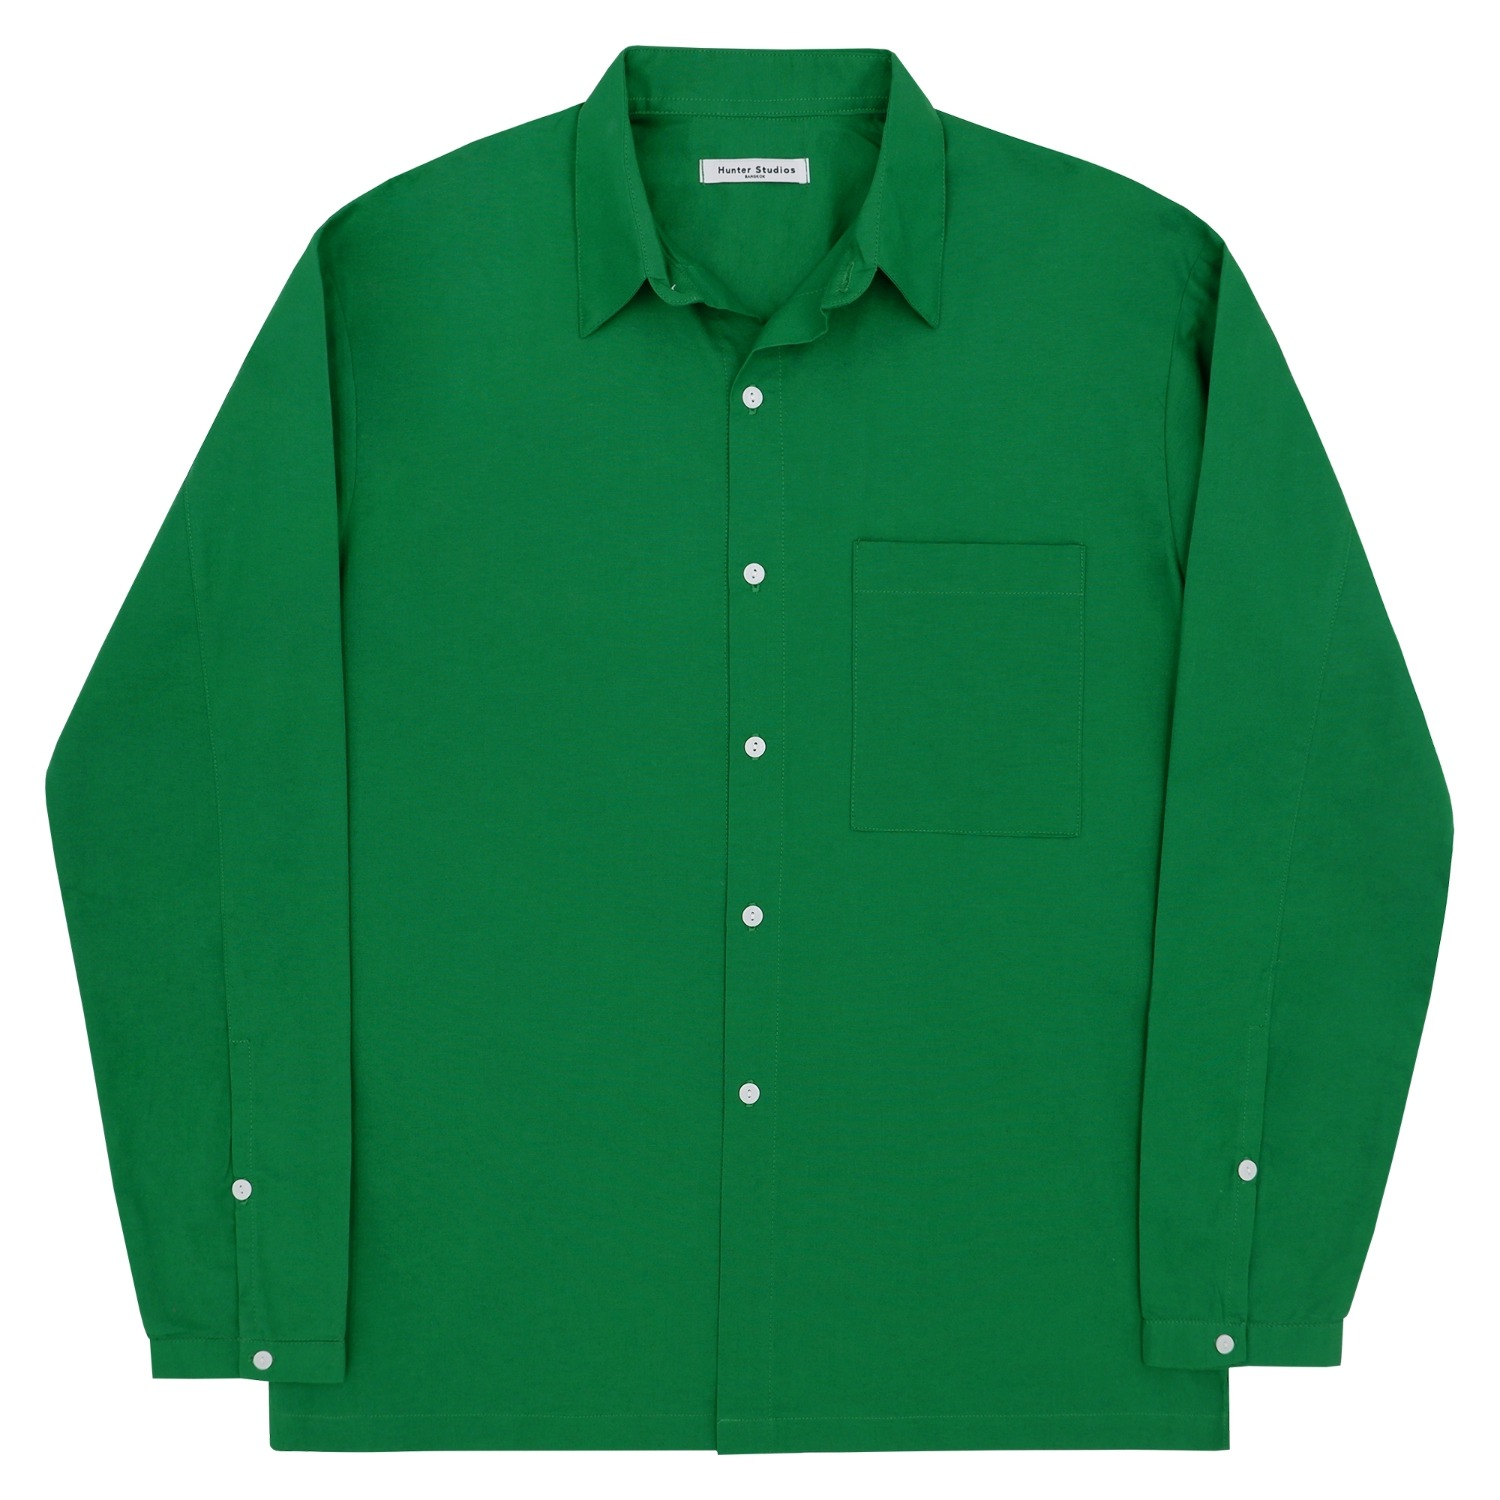 Fainly Long Shirt (Green)